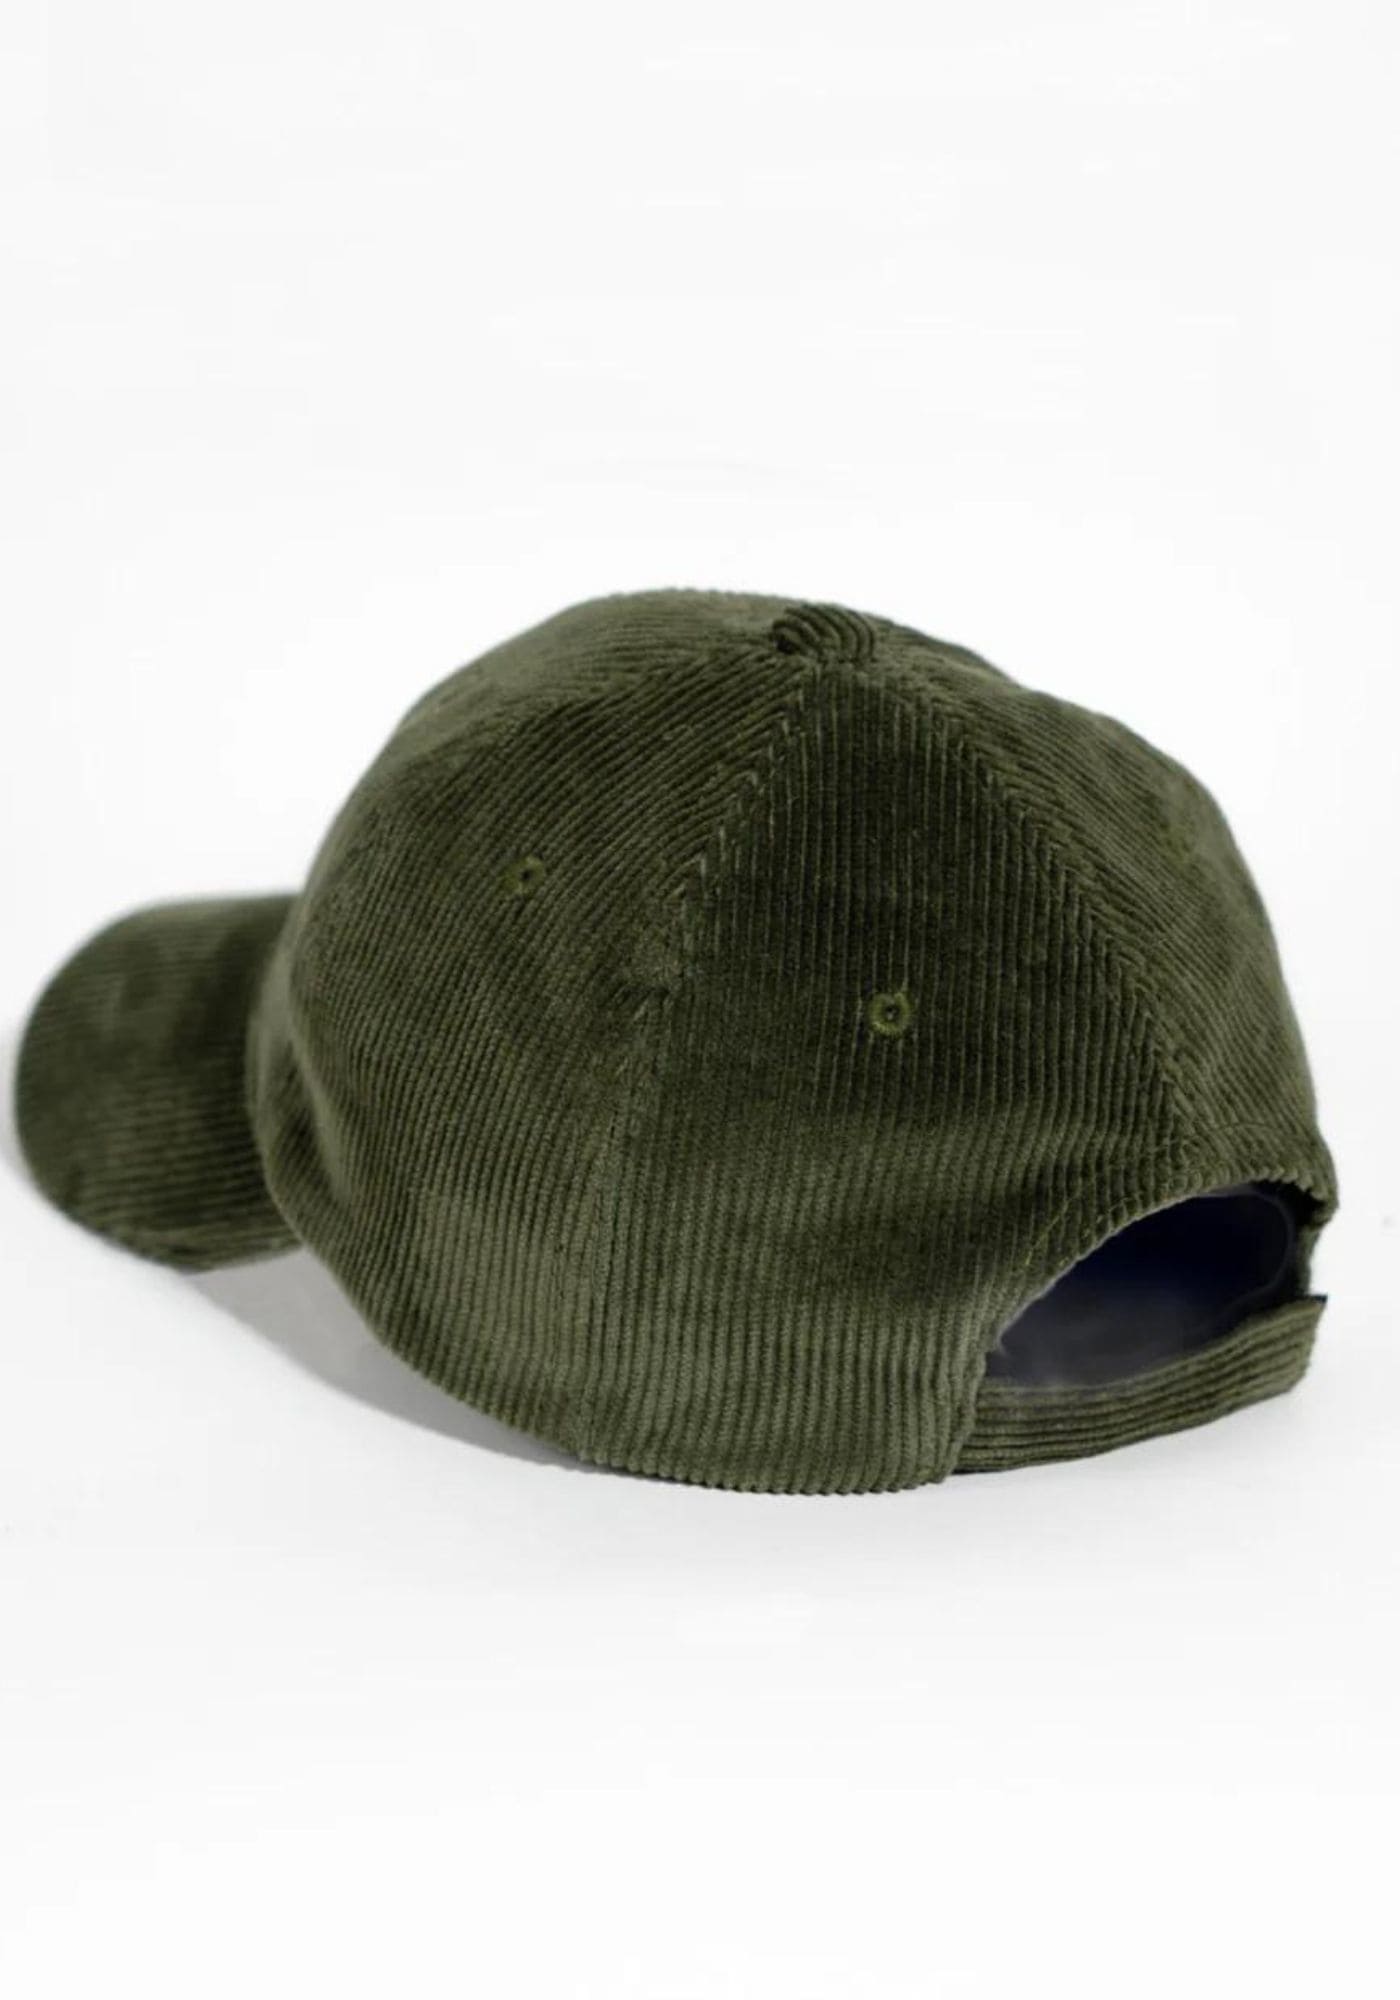 Vue arrière de la casquette en velours vert olive de chez Côtelé Paris